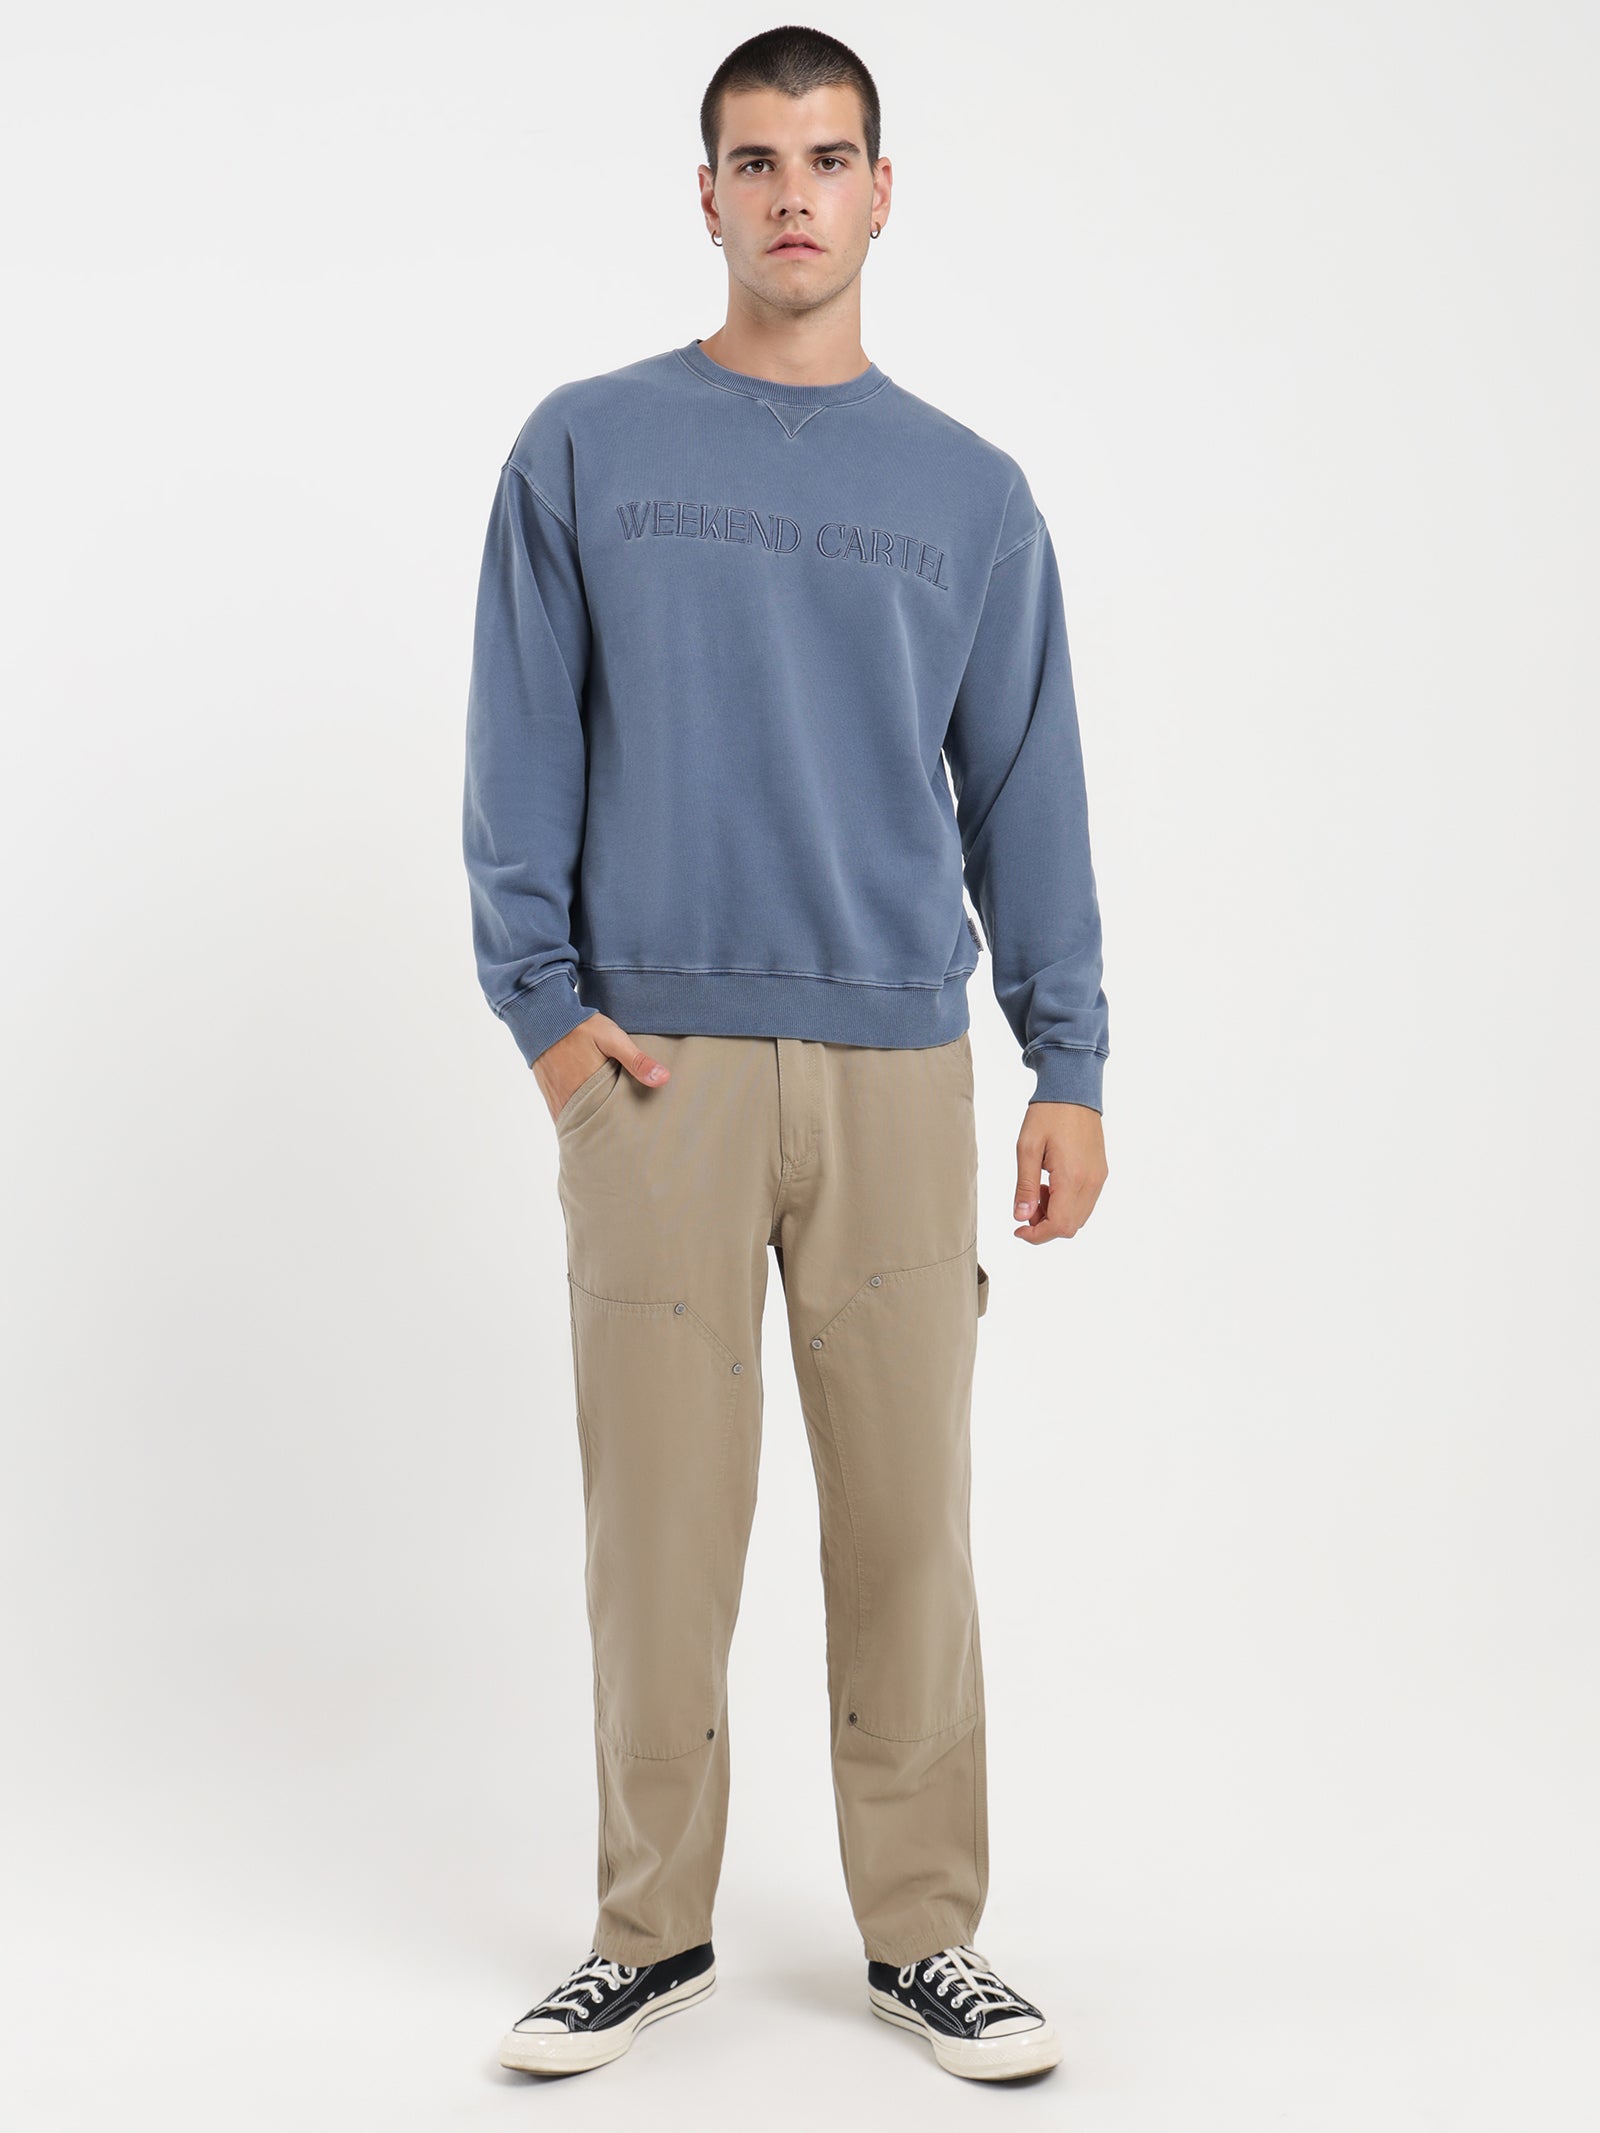 Cartel Pigment Sweater in Slate - Glue Store